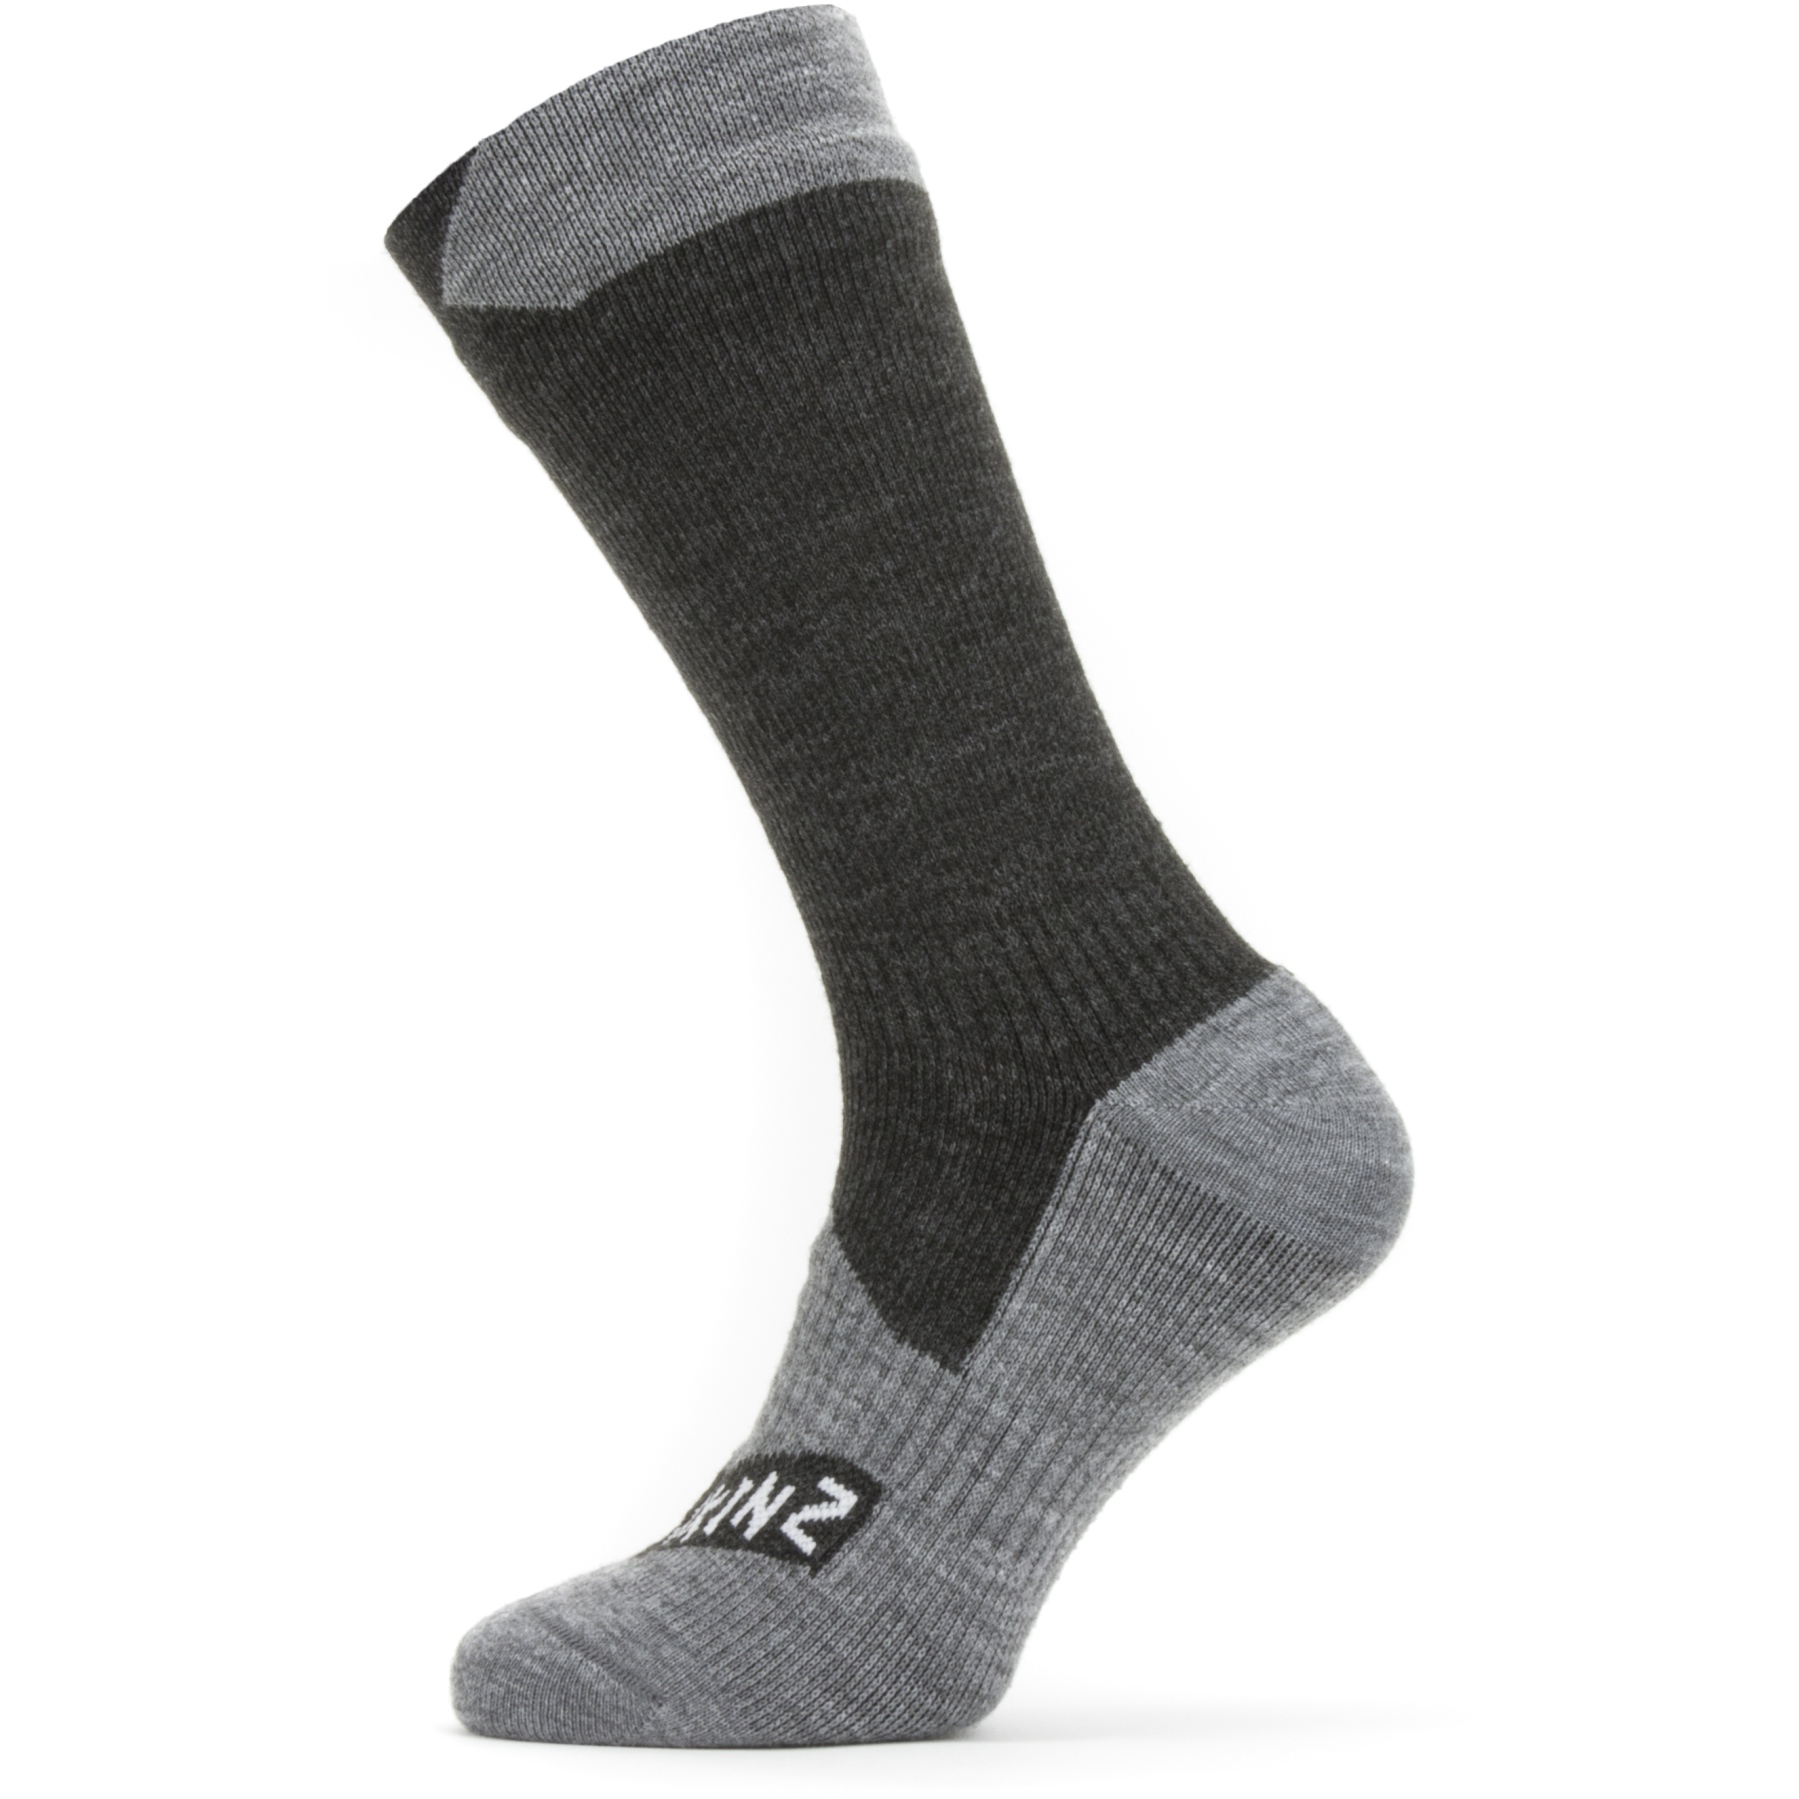 Productfoto van SealSkinz Raynham Waterdichte Halflange Sokken Voor Alle Weersomstandigheden - Black/Grey Marl